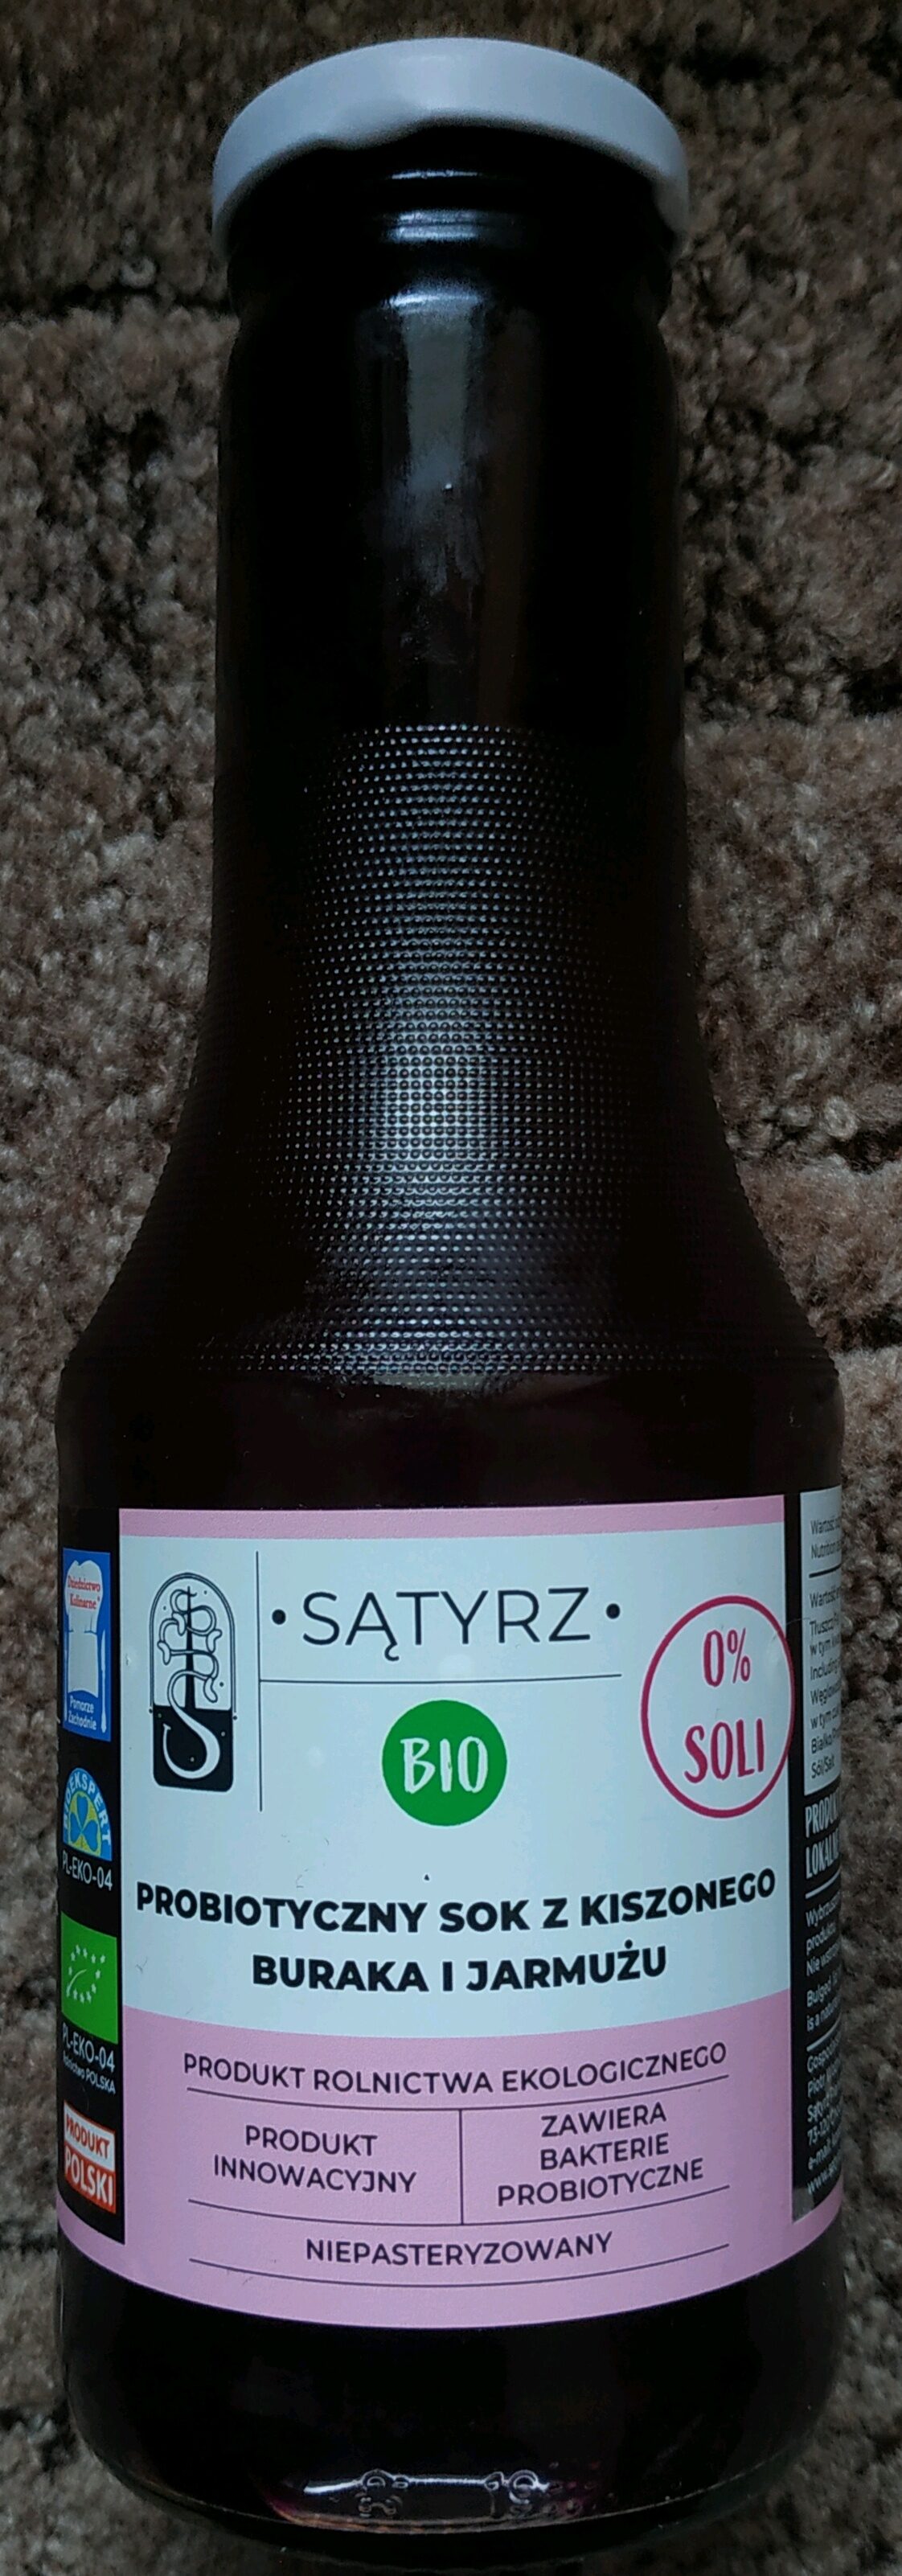 Probiotyczny sok z kiszonego buraka i jarmużu - Product - pl